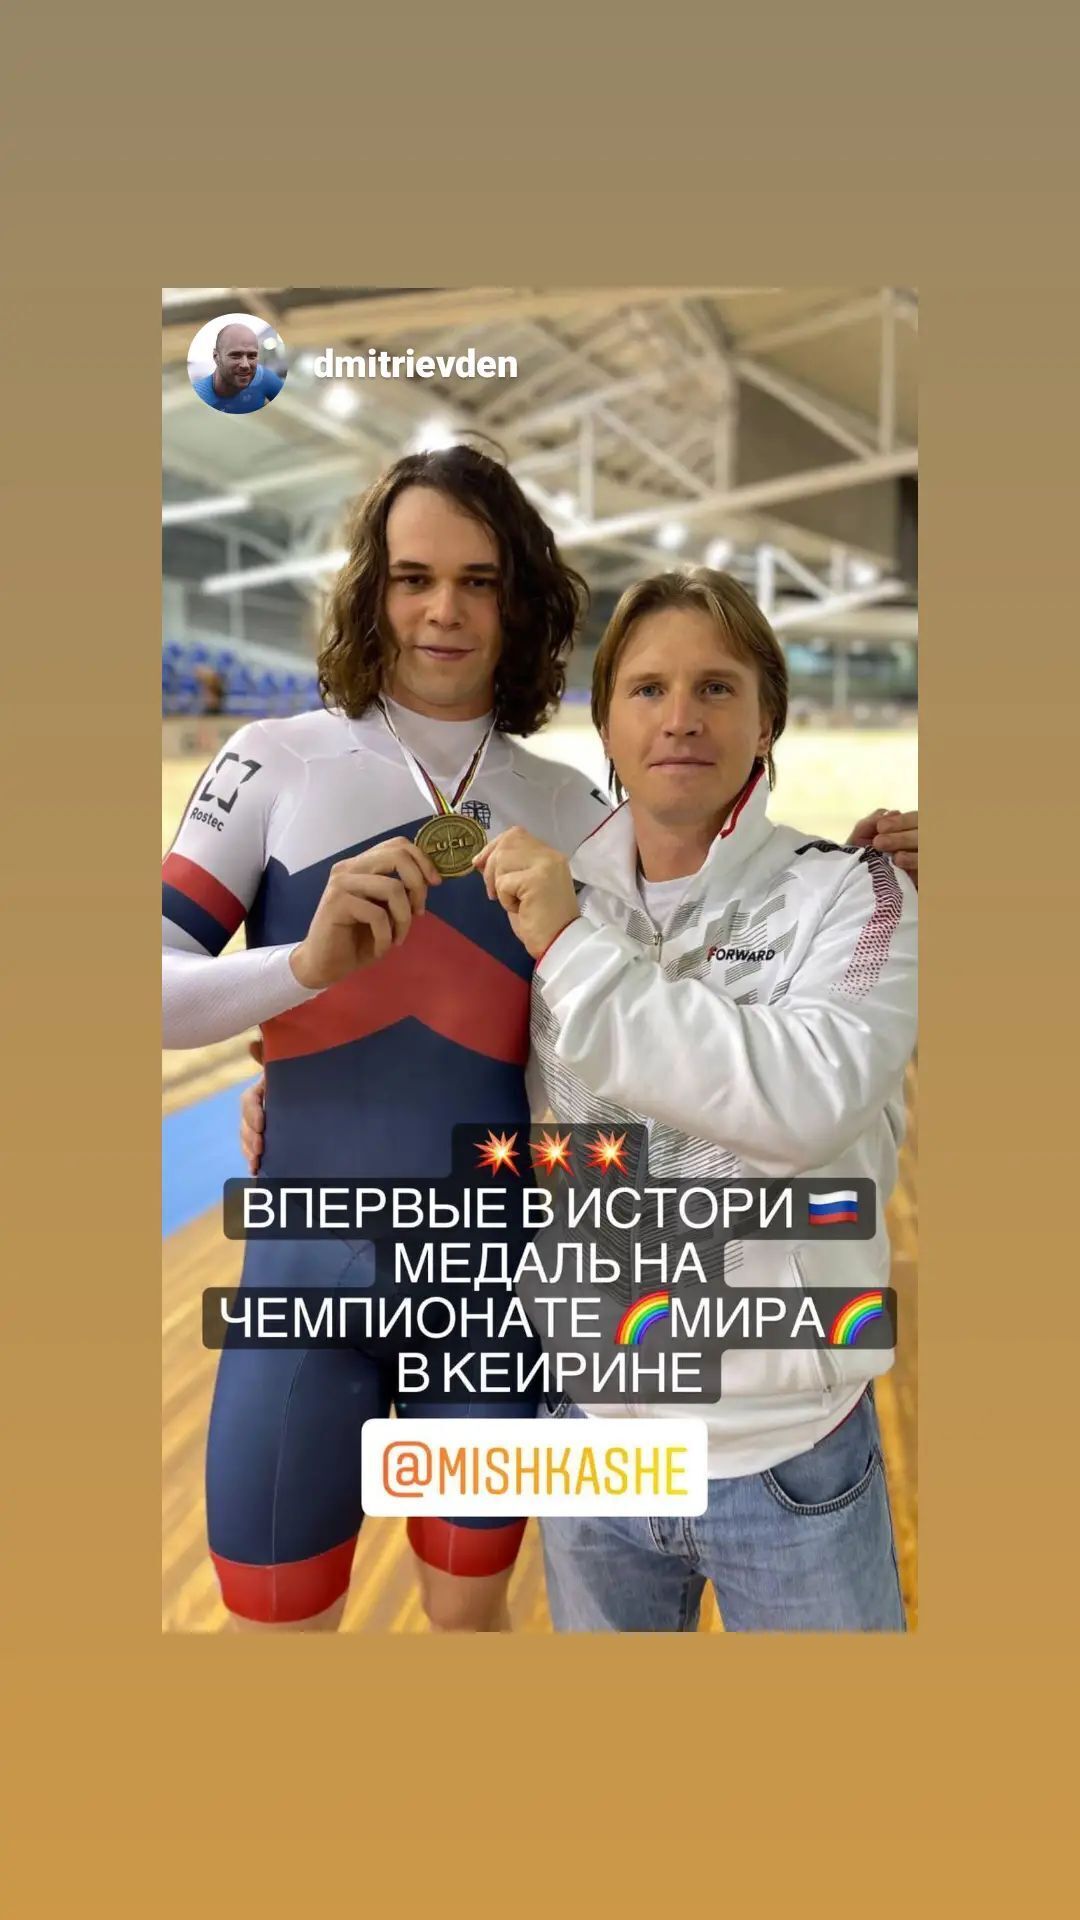 MKOl zlekceważył Rosję, wpuszczając na igrzyska olimpijskie rekordzistę świata z Moskwy, który wspierał Ukrainę